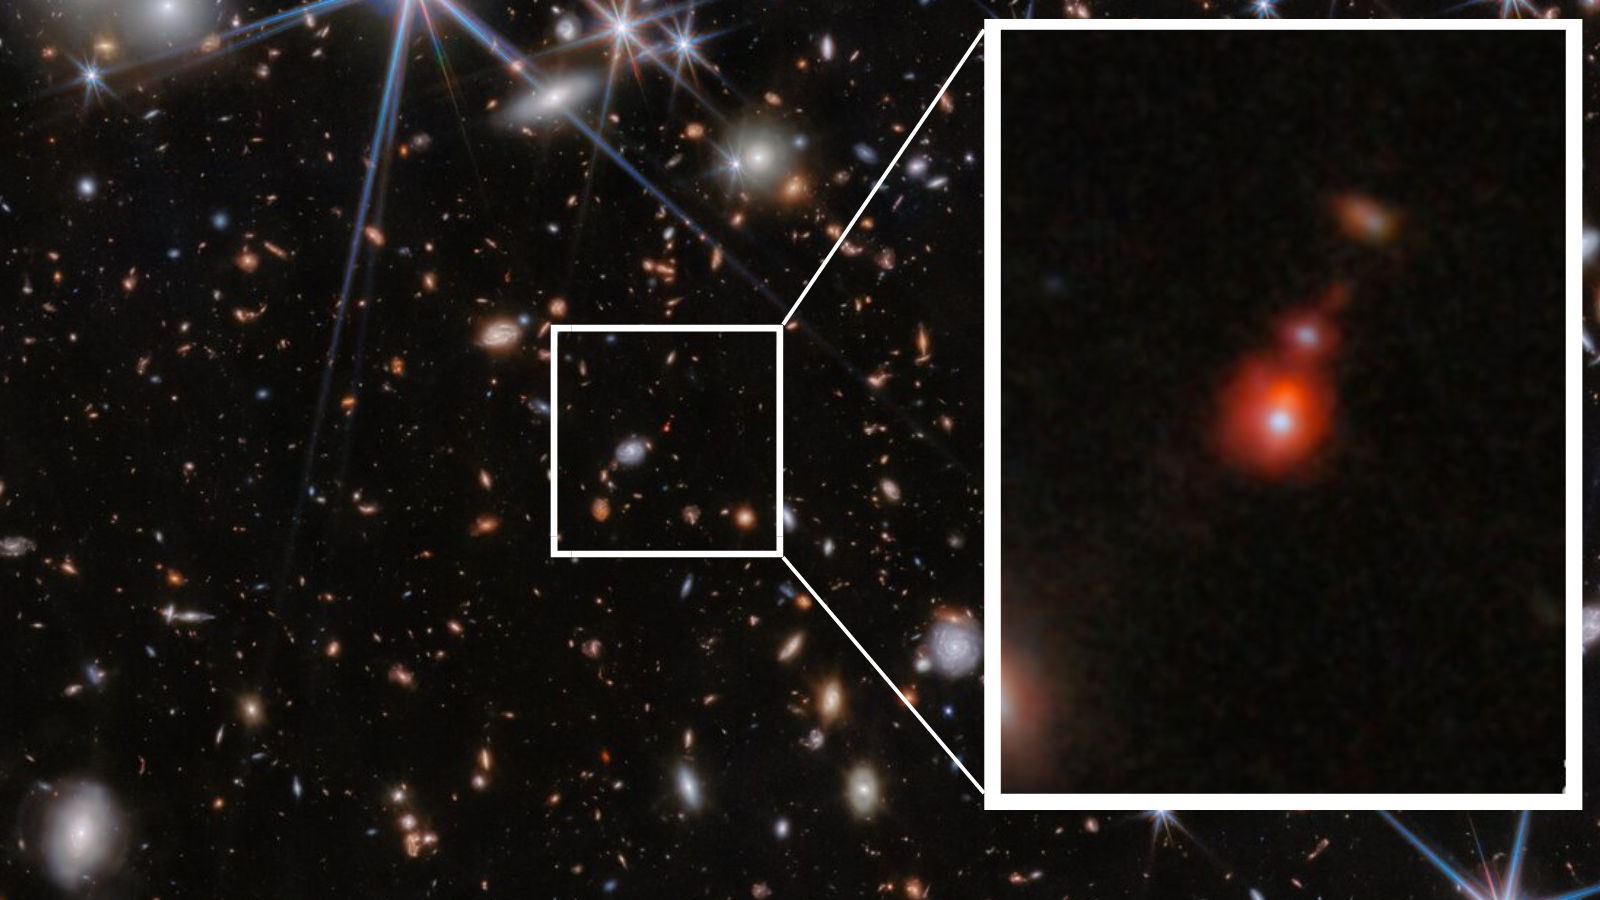 سه پانل نشان داده شده است که یک منطقه کوچکتر از میدان کهکشان PRIMER را نشان می دهد.  تصویر اول میدان بزرگی از کهکشان ها را در پس زمینه سیاه فضا نشان می دهد.  تصویر دوم ناحیه کوچکتری از این میدان را نشان می‌دهد که کهکشان‌ها را با جزئیات نزدیک‌تر نشان می‌دهد و در اشکال و رنگ‌های مختلف ظاهر می‌شود.  تصویر نهایی سیستم کهکشانی ZS7 را نشان می دهد که انتشار هیدروژن یونیزه شده در رنگ نارنجی و اکسیژن یونیزه مضاعف را نشان می دهد.